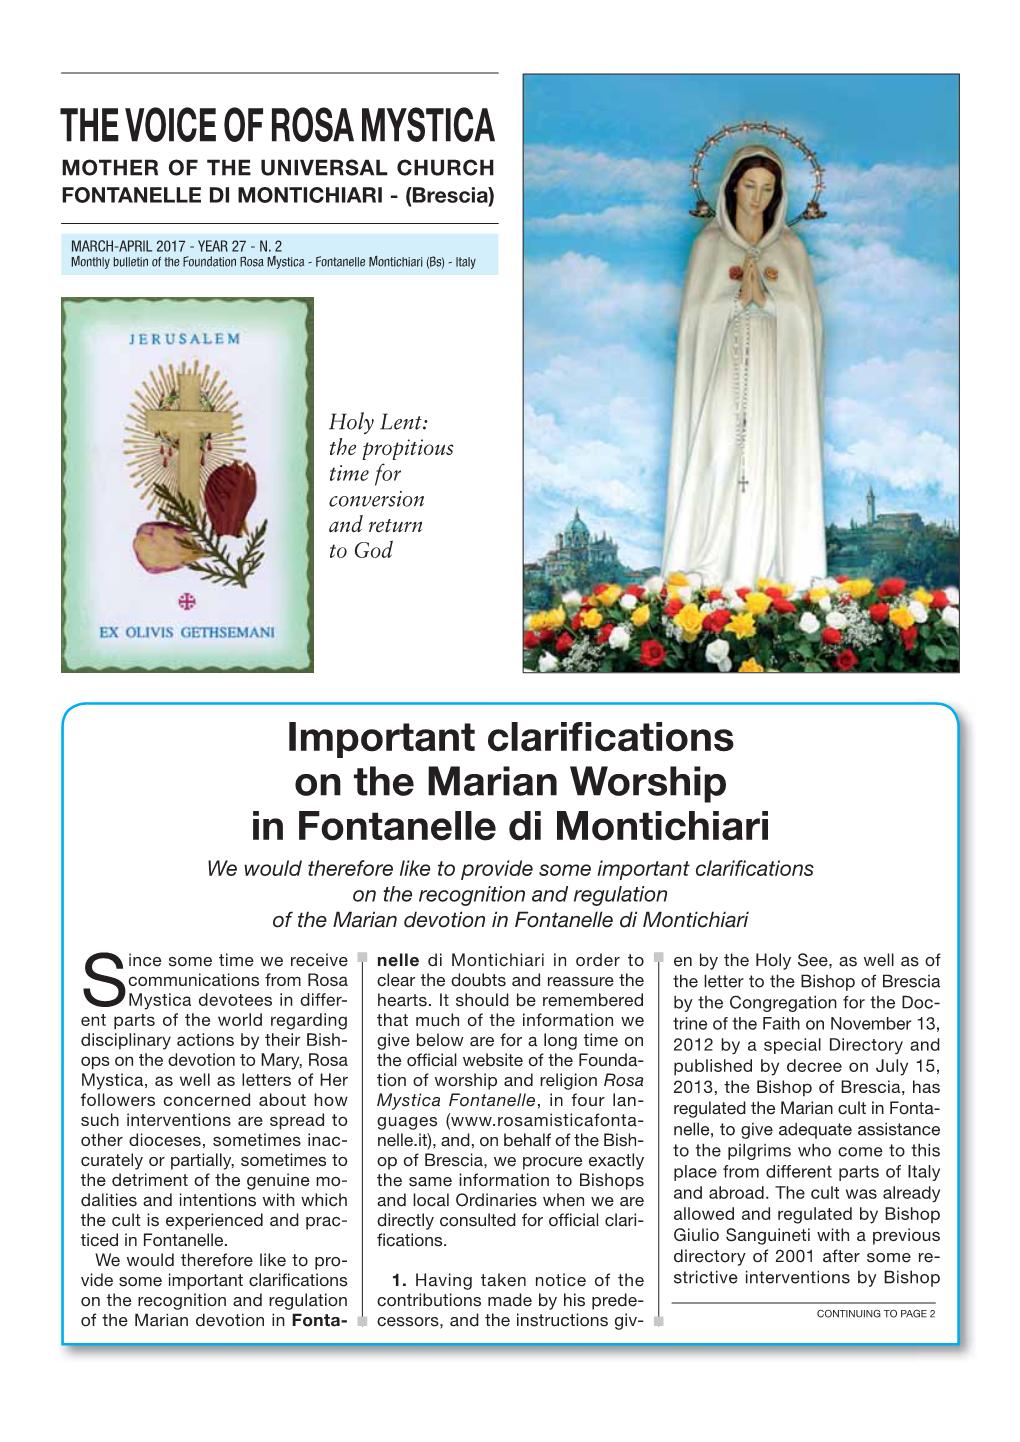 THE VOICE of ROSA MYSTICA MOTHER of the UNIVERSAL CHURCH FONTANELLE DI MONTICHIARI - (Brescia)